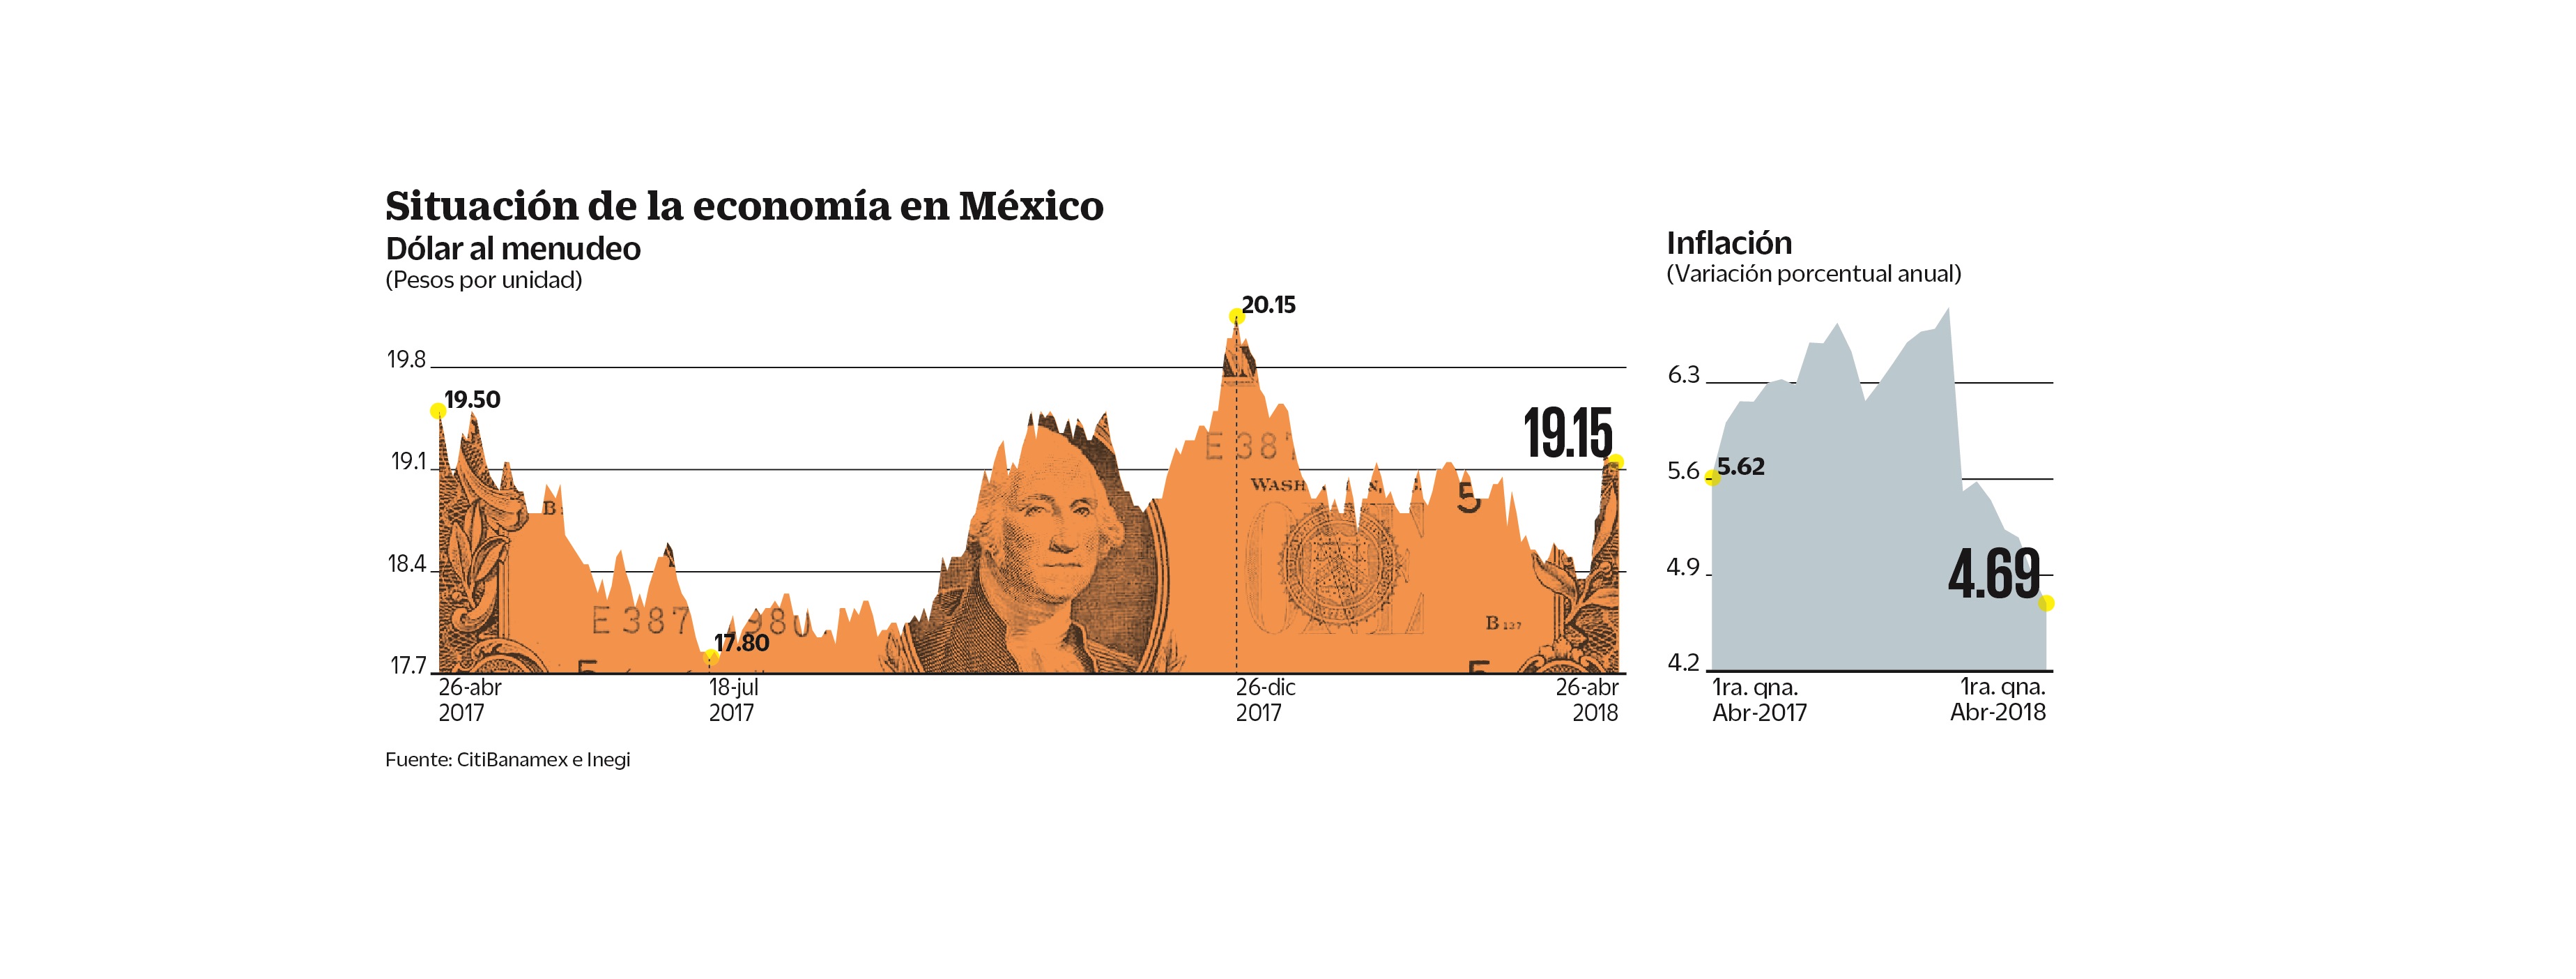 Banxico advierte posible volatilidad postelectoral